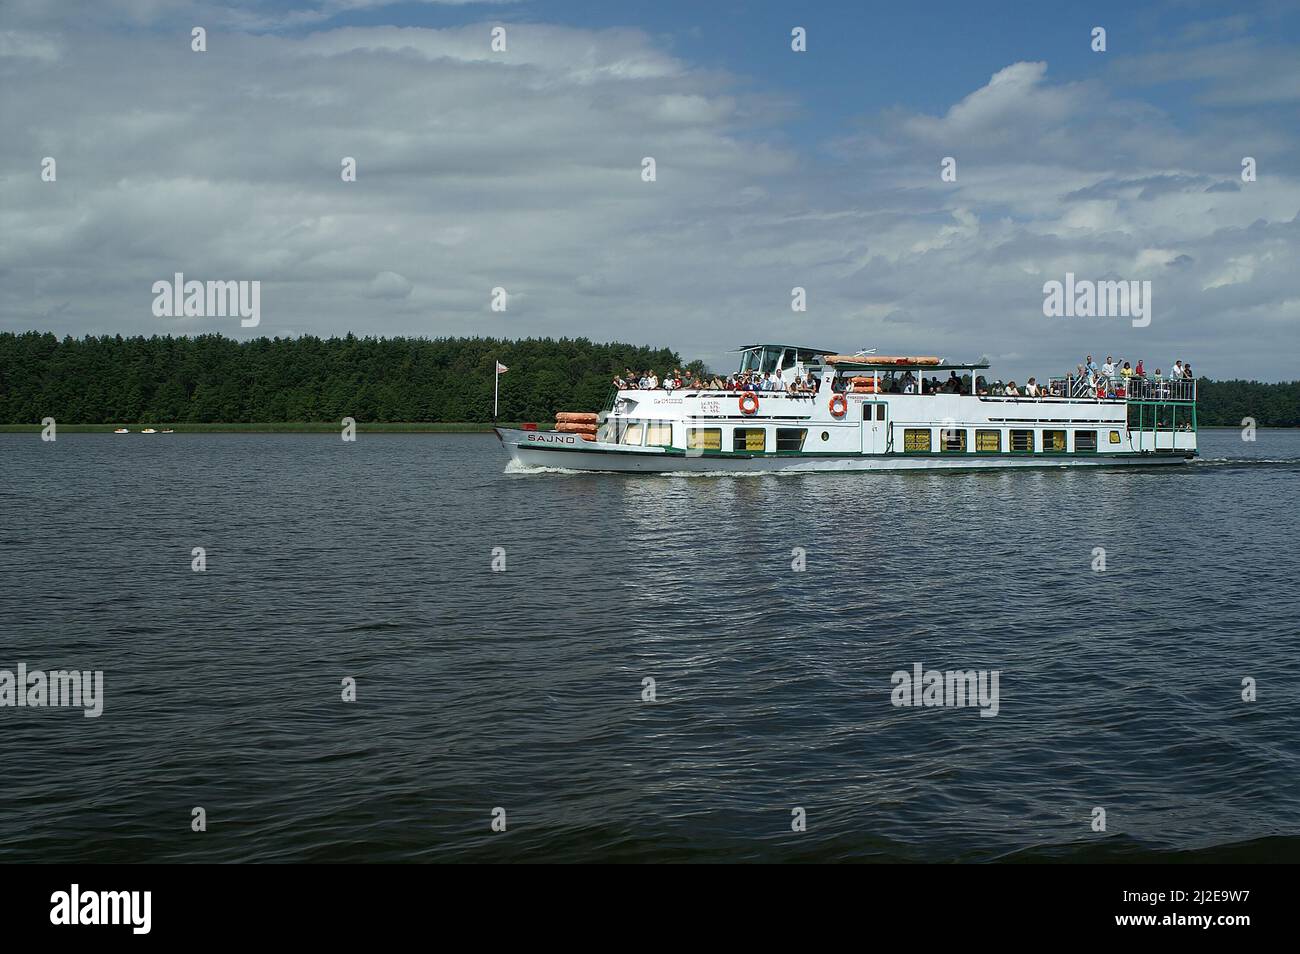 Poland Polen, Polska, A cruise ship on the lake near Augustów. Ein Kreuzfahrtschiff auf dem See bei Augustów. Statek wycieczkowy na jeziorze Augustowa Stock Photo